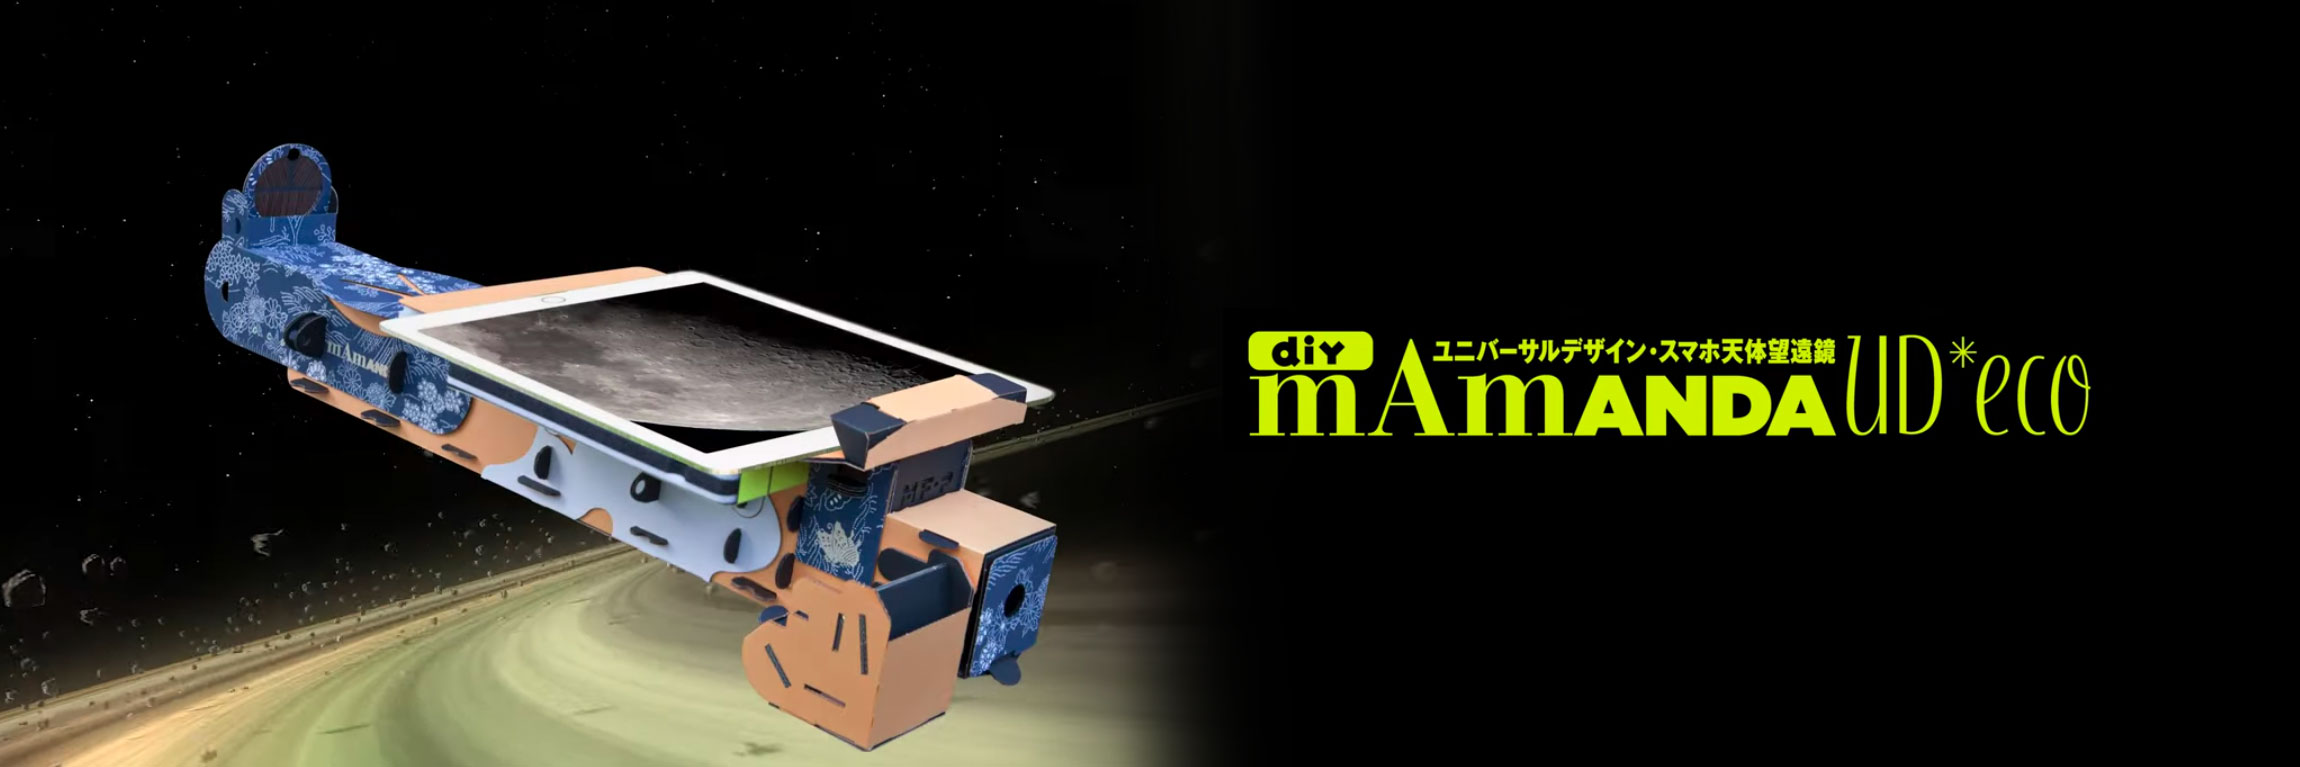 スマホ天体望遠鏡 Mamanda Ud Eco Panda ユニバーサルデザイン スマホ天体望遠鏡 Tocol Artcrafts